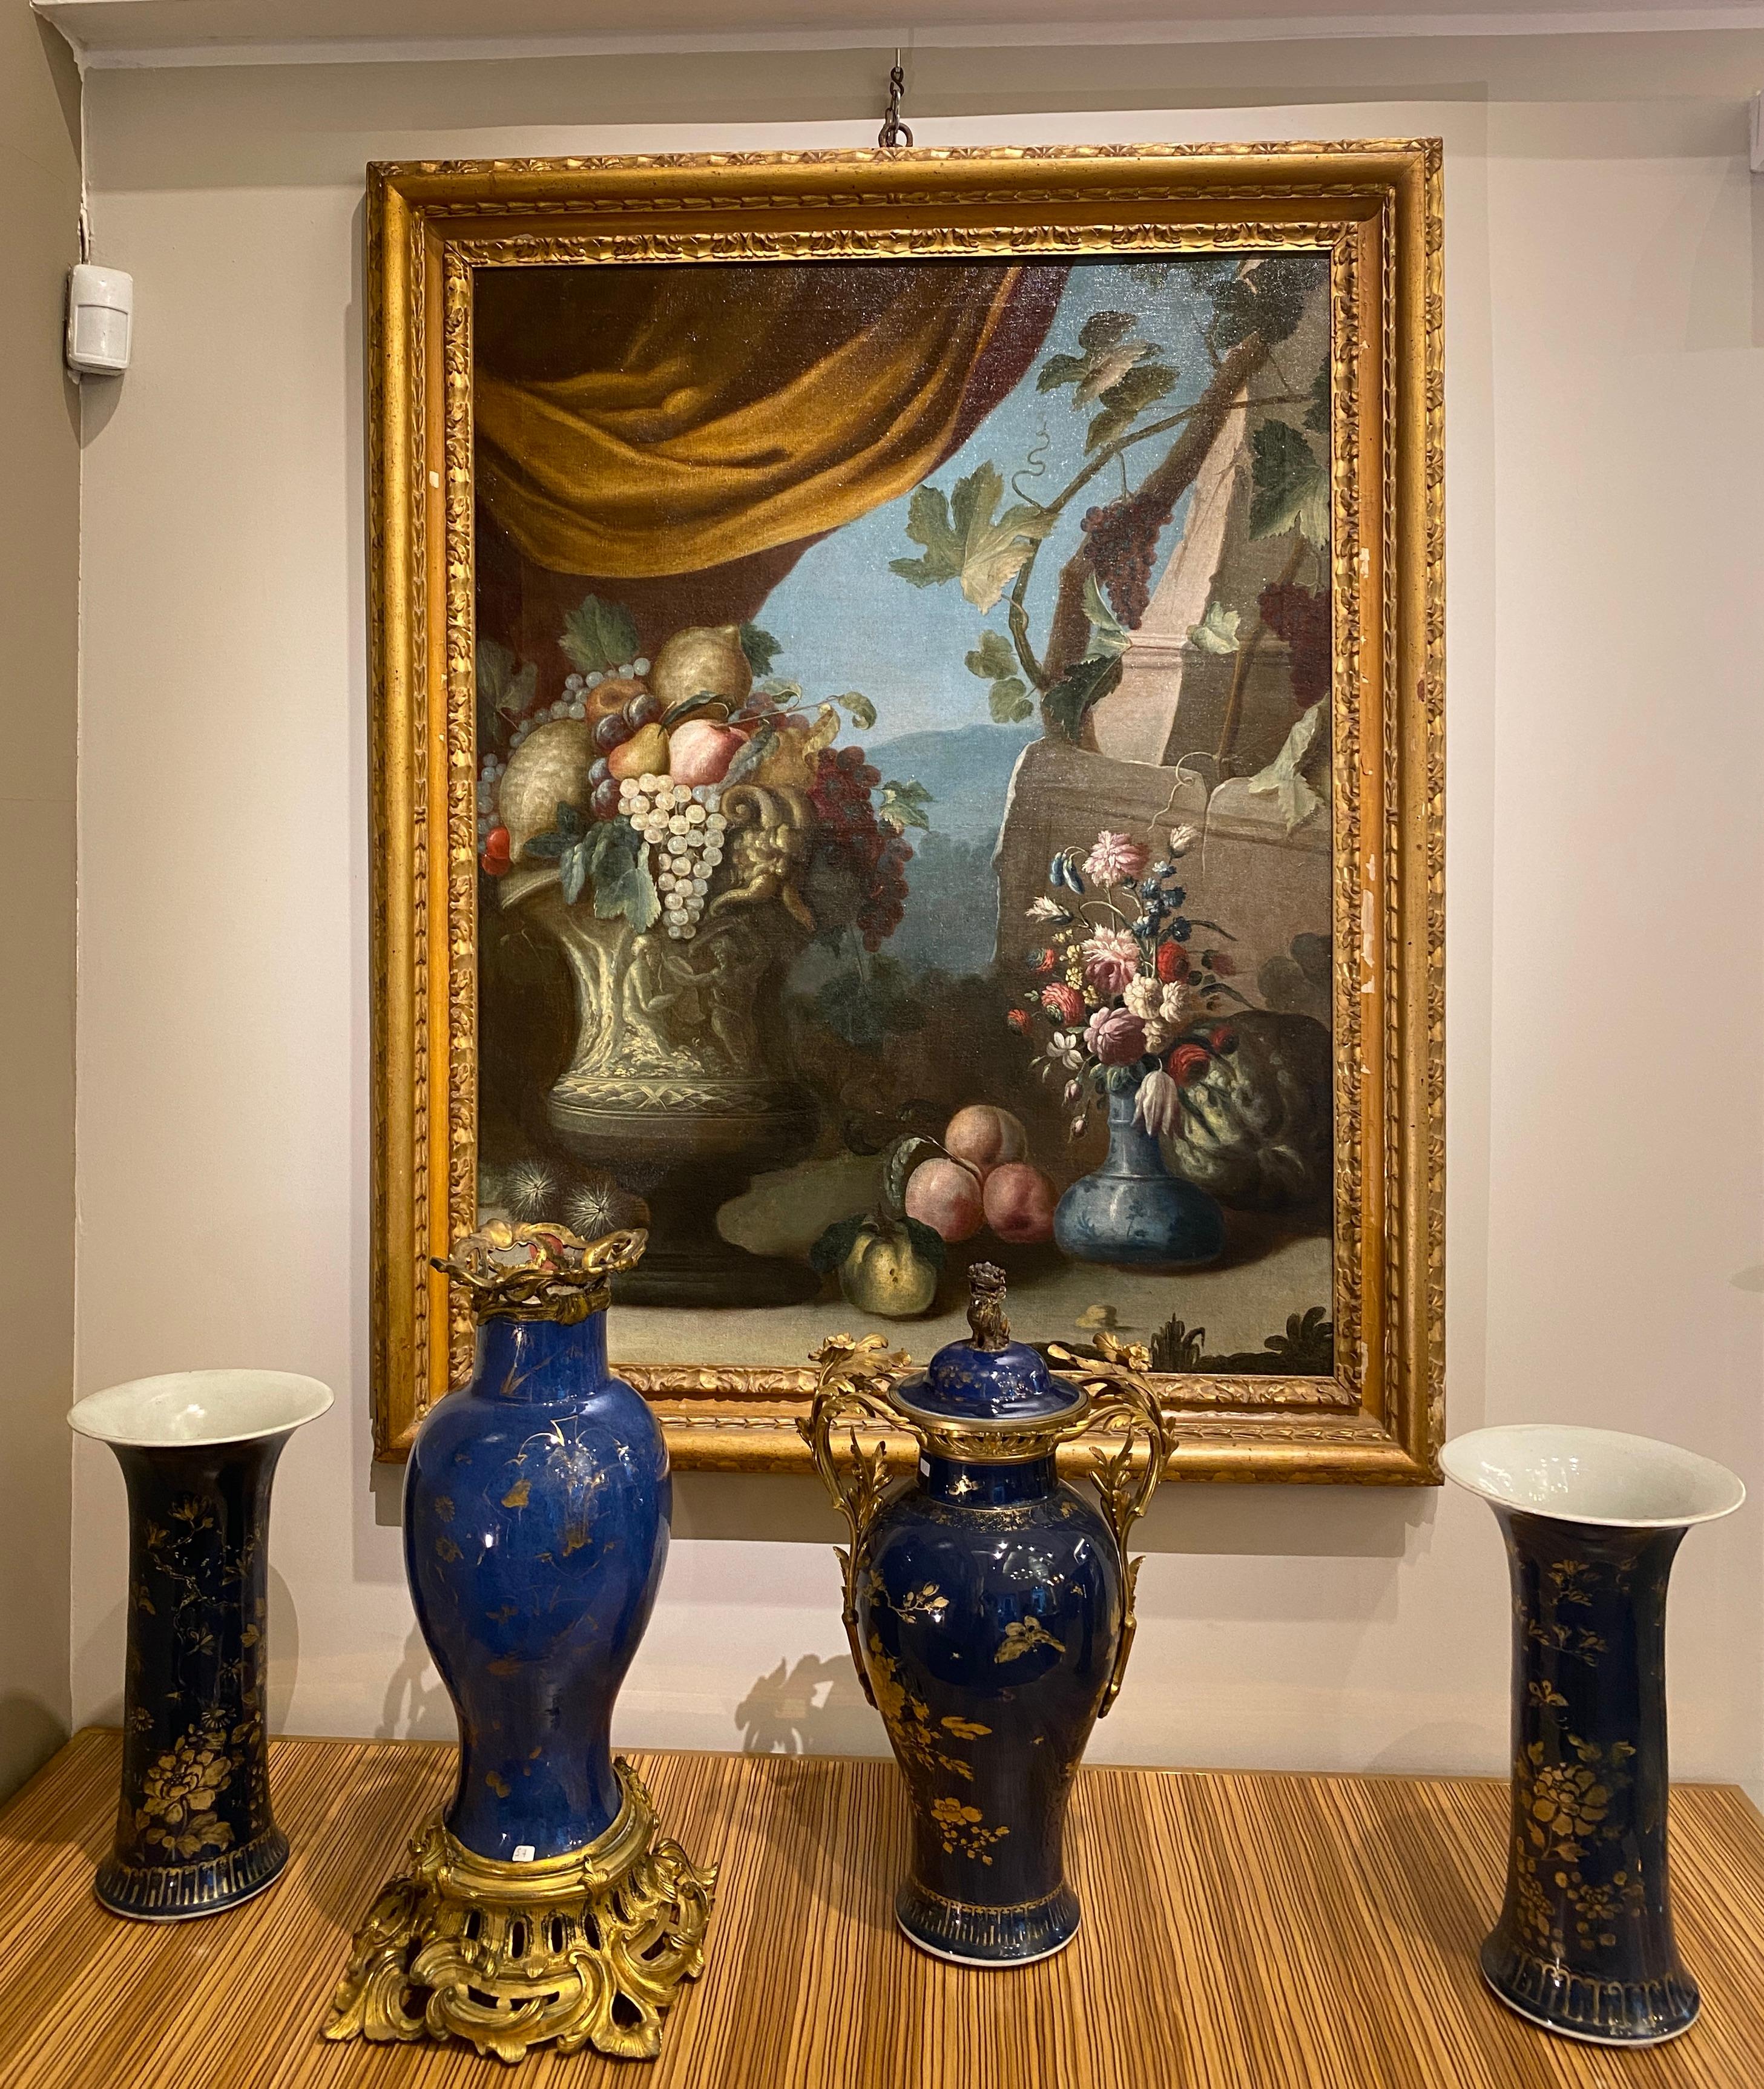 
Dieses Paar von ausgezeichneten  Italienisches Stillleben Öl auf Leinwand mit Blumen und Obst mit klassischen Ruinen auf dem Hintergrund und farbigen Vorhängen schaffen Harmonie der Komposition. Bemerkenswert sind die schönen Renaissancevasen im